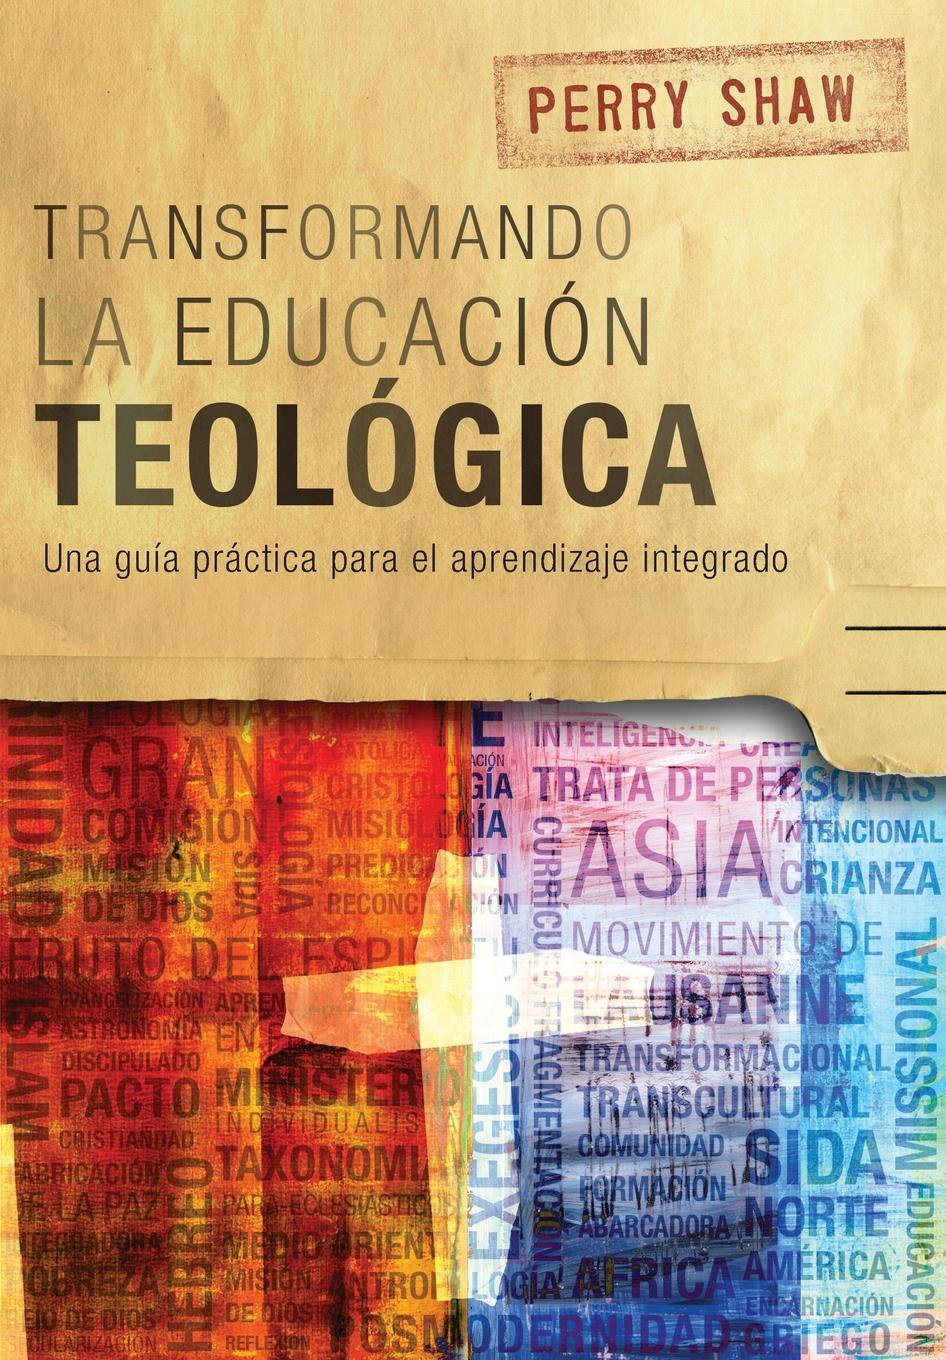 Transformando la educacion teologica. Una guia practica para el aprendizaje integrado